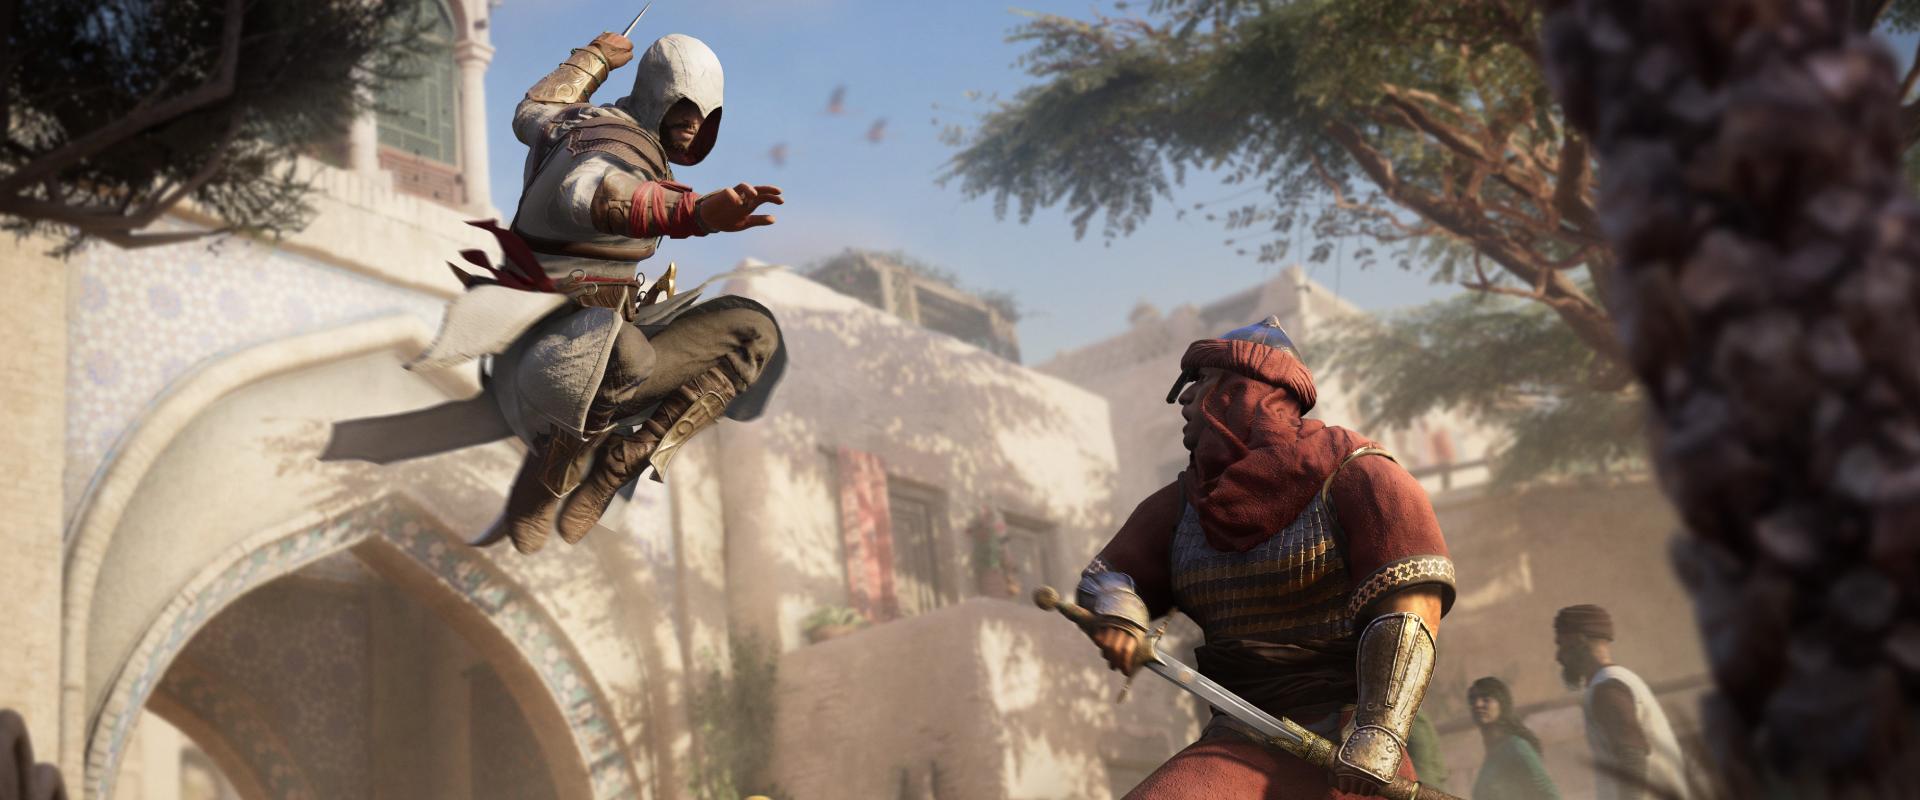 Assassin's Creed: Április végéig ingyen is kipróbálható a legfrissebb rész, a Mirage